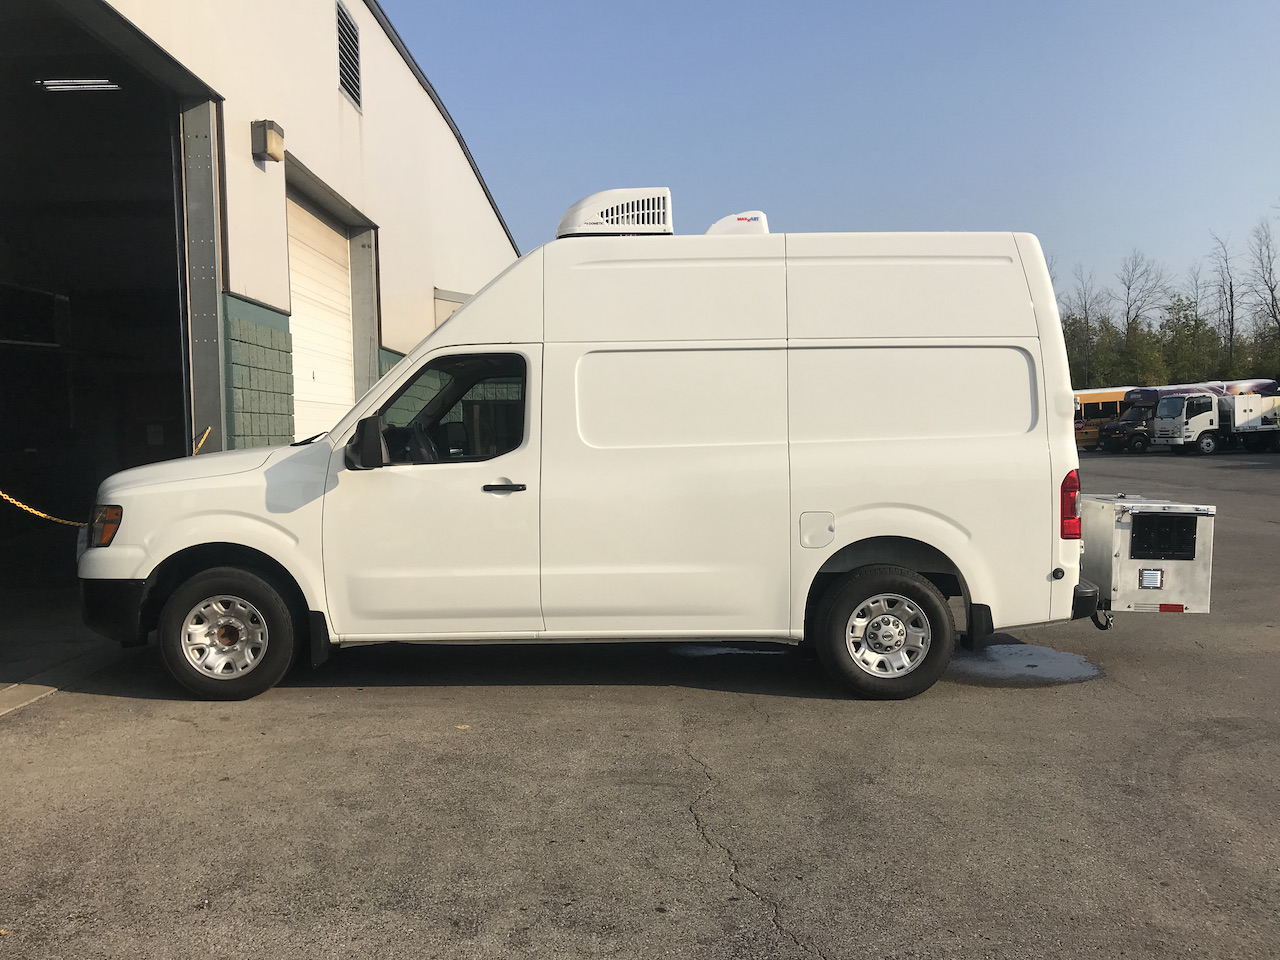 Mobile-Dog-Grooming-Van-46